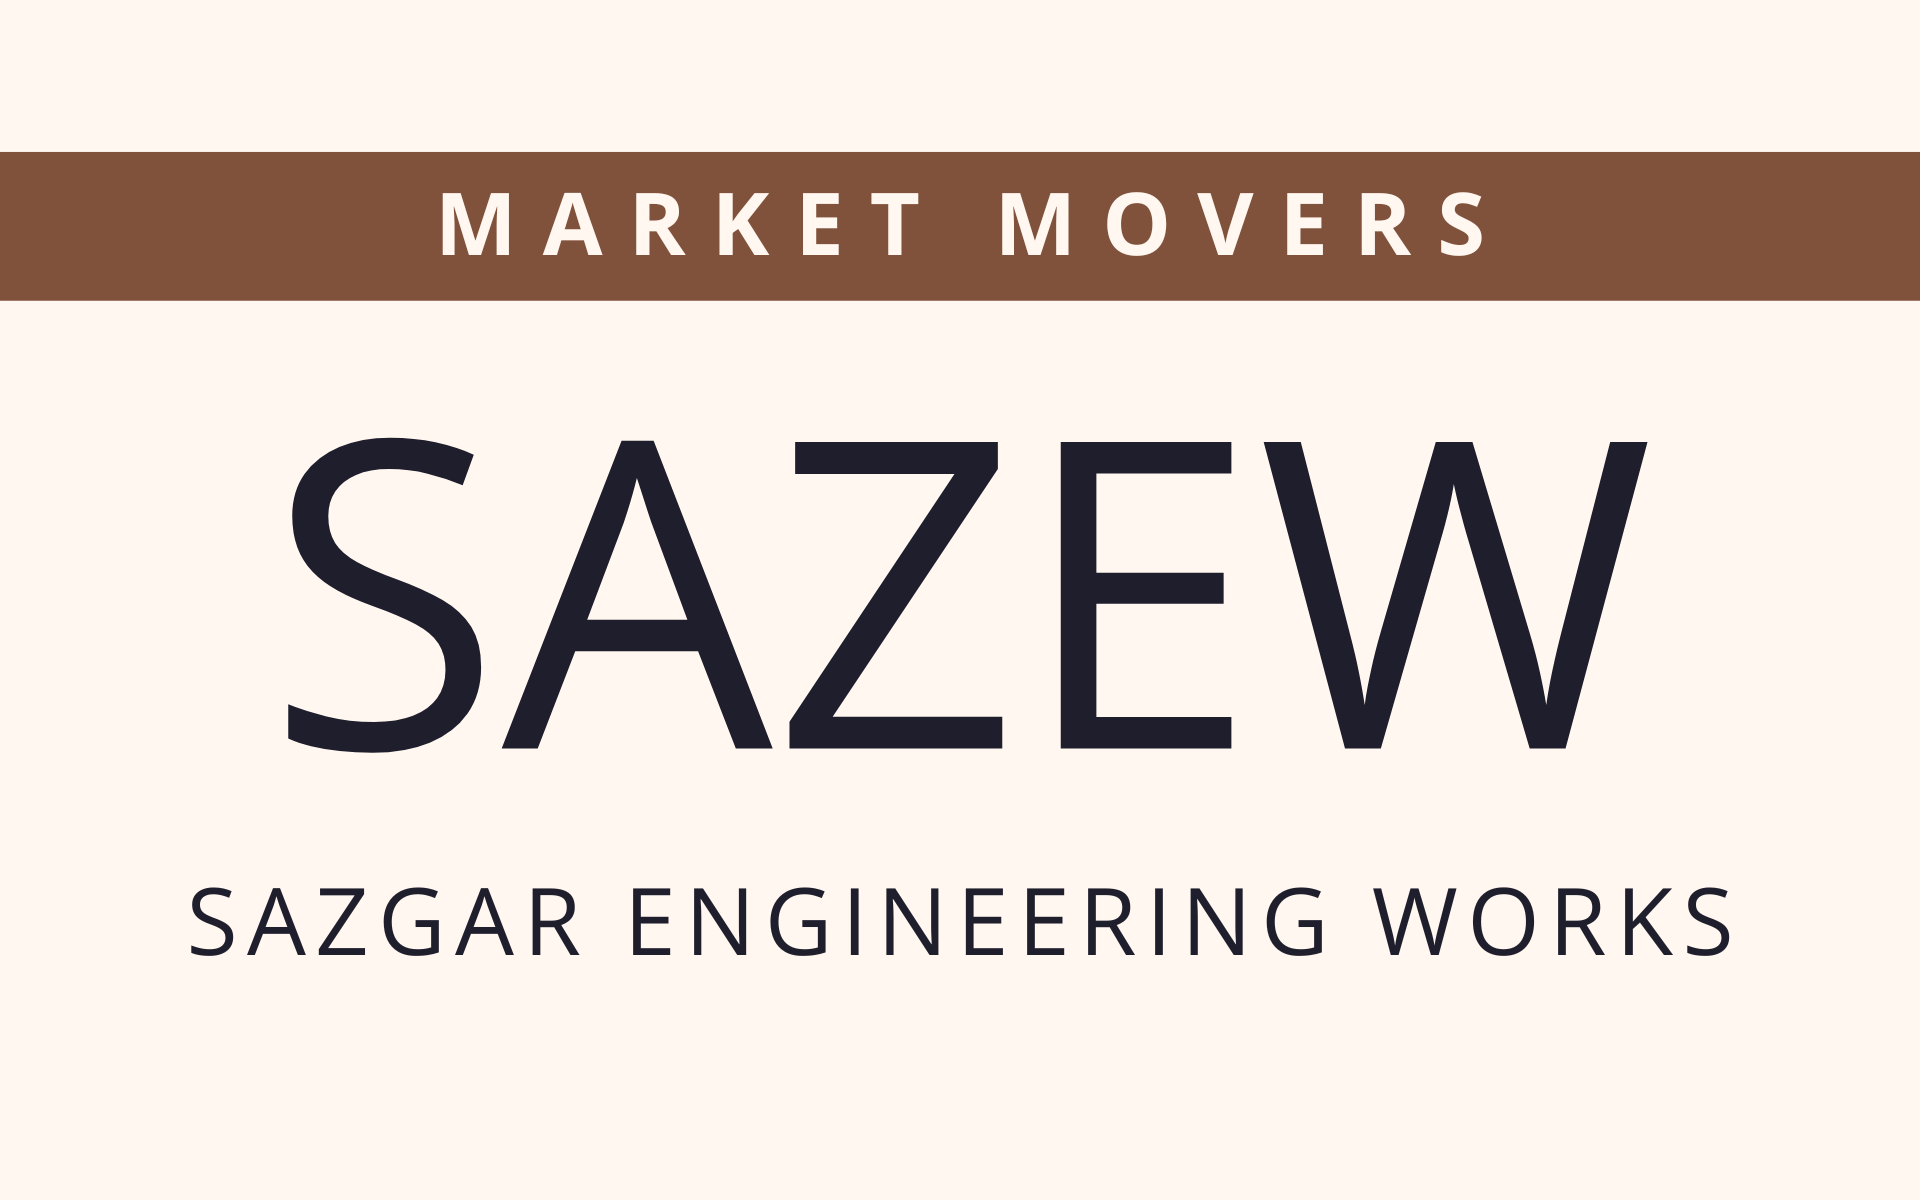 SAZEW - Market Movers